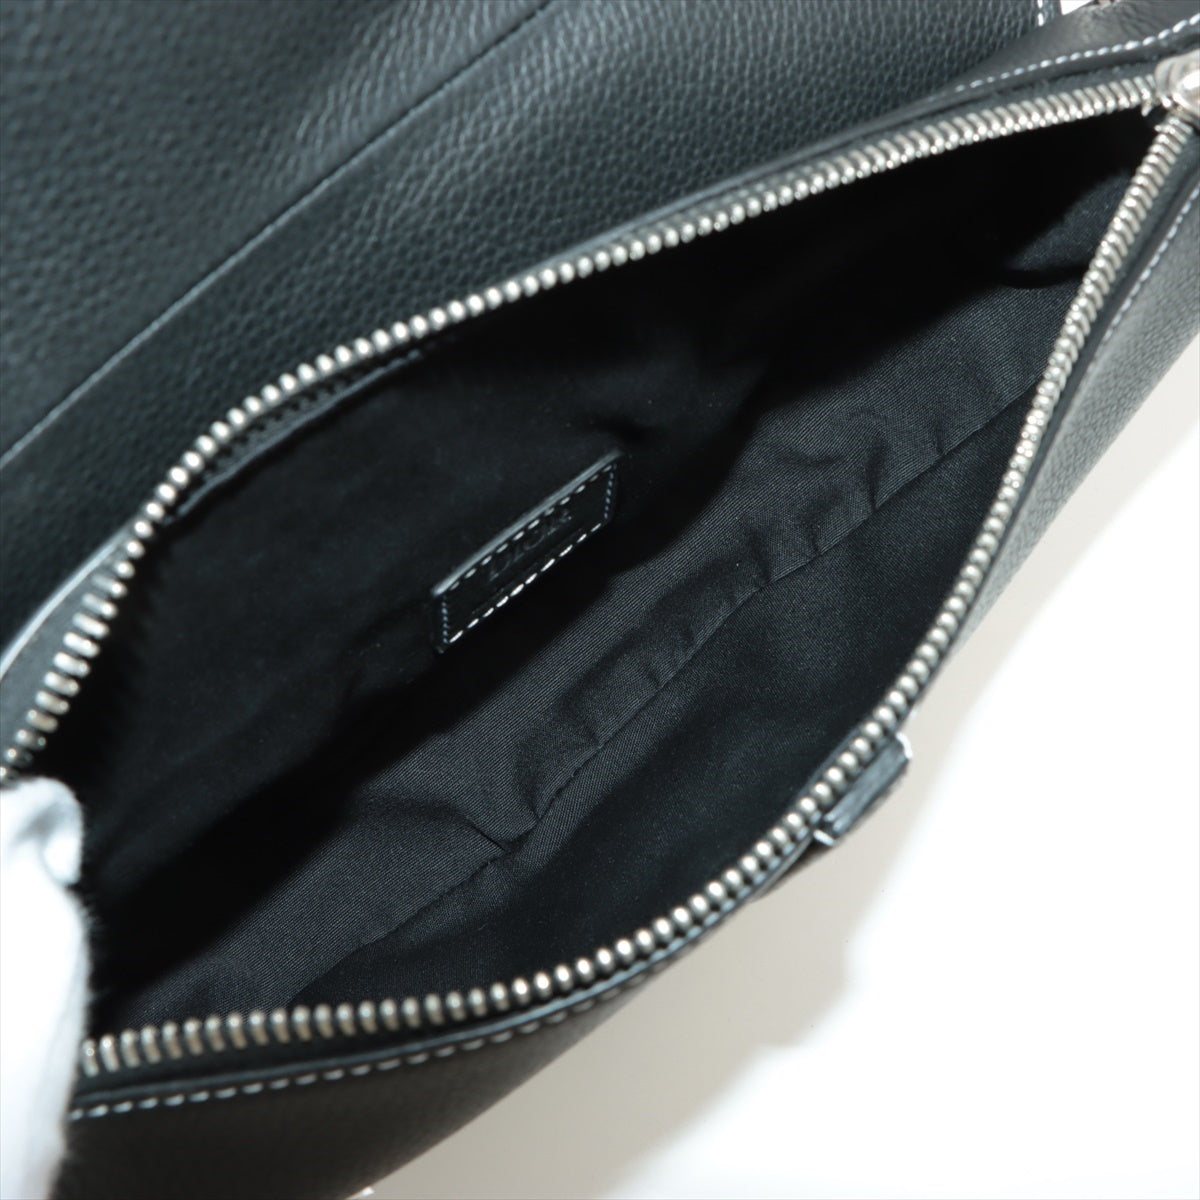 DIOR HOMME Saddle Bag Leather Sling backpack Black